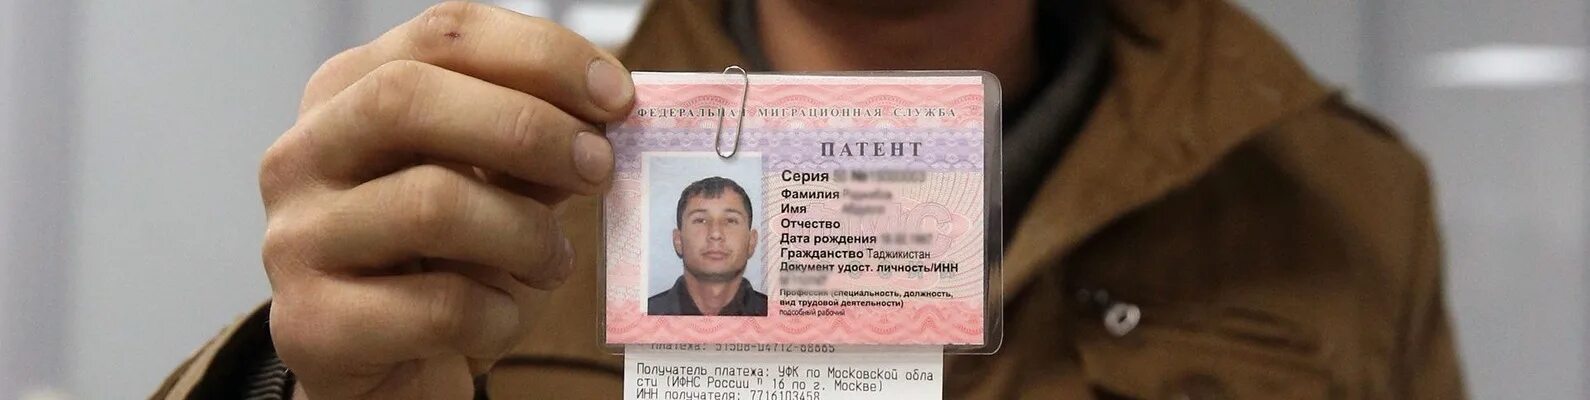 Где сделать патент. Патент для мигрантов. Патент для иностранных граждан. Патент фото. Патент для иностранных граждан Таджикистана.